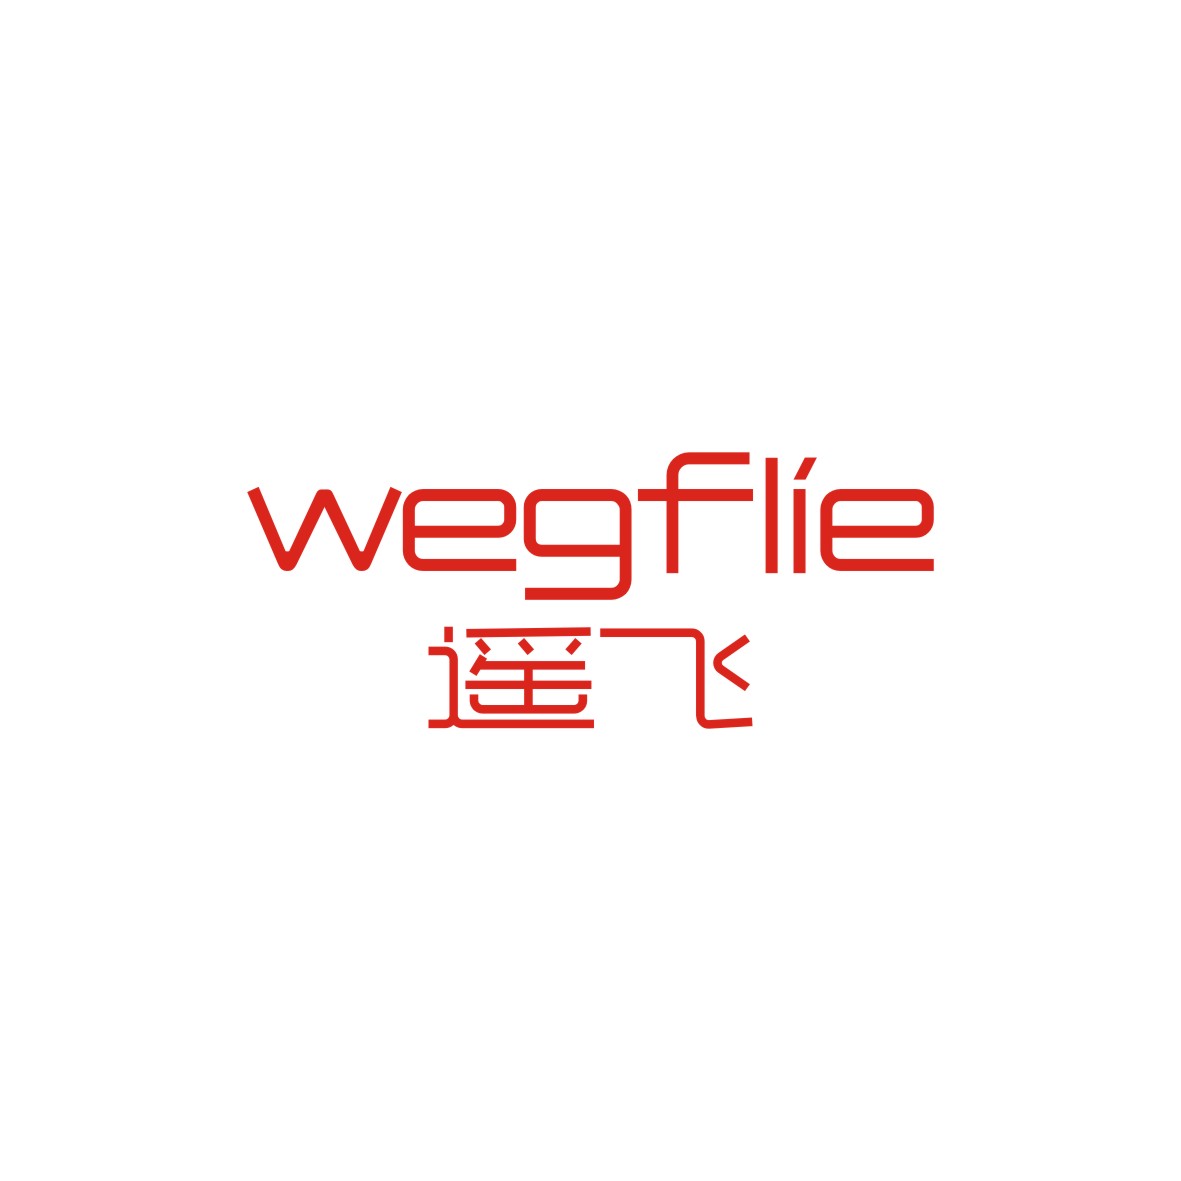 广州品翰文化发展有限公司商标遥飞 WEGFLIE（28类）多少钱？